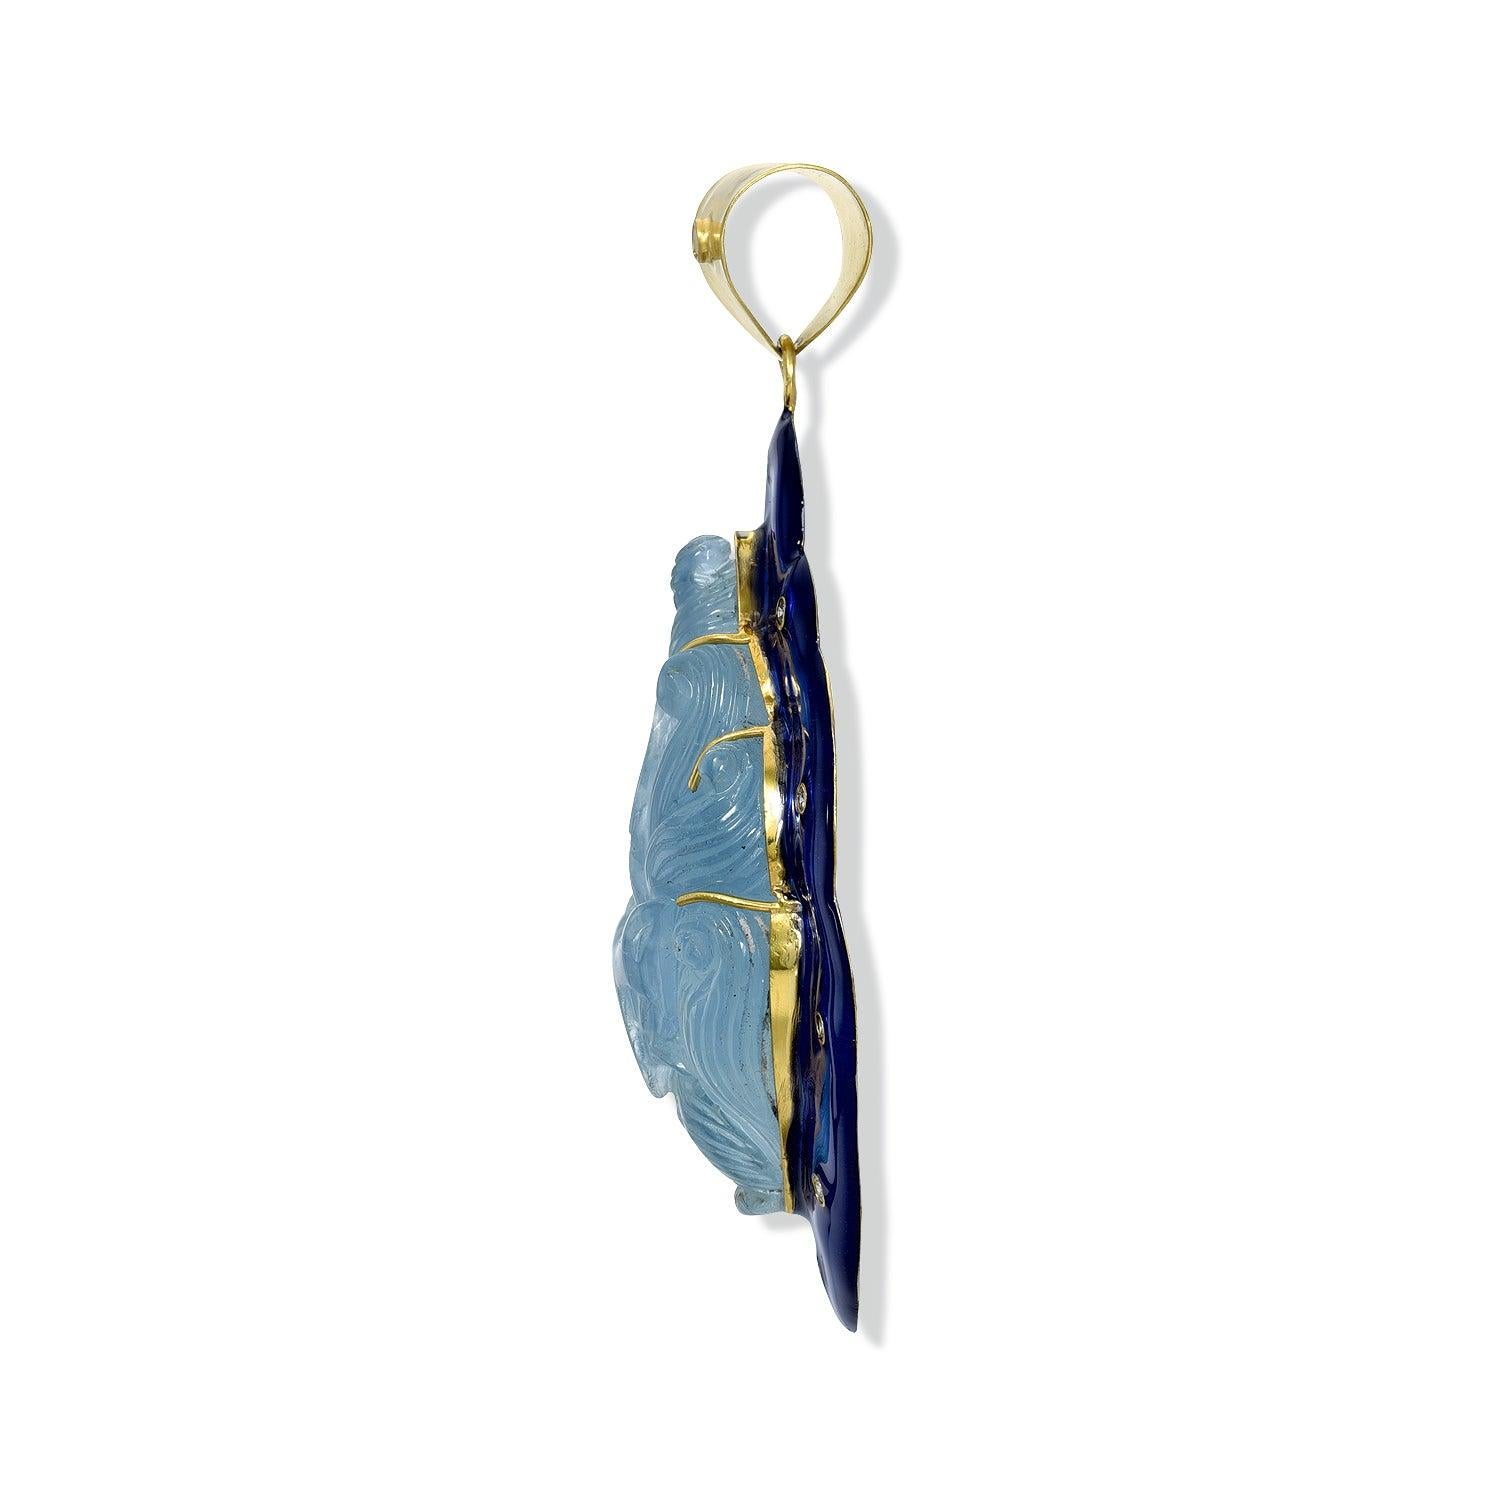 Ce pendentif classique en émail floral sculpté présente des détails sculptés en aigue-marine et une finition en émail bleu brillant. Il vous donne une touche d'élégance parfaite, idéale pour les occasions spéciales et les cadeaux.